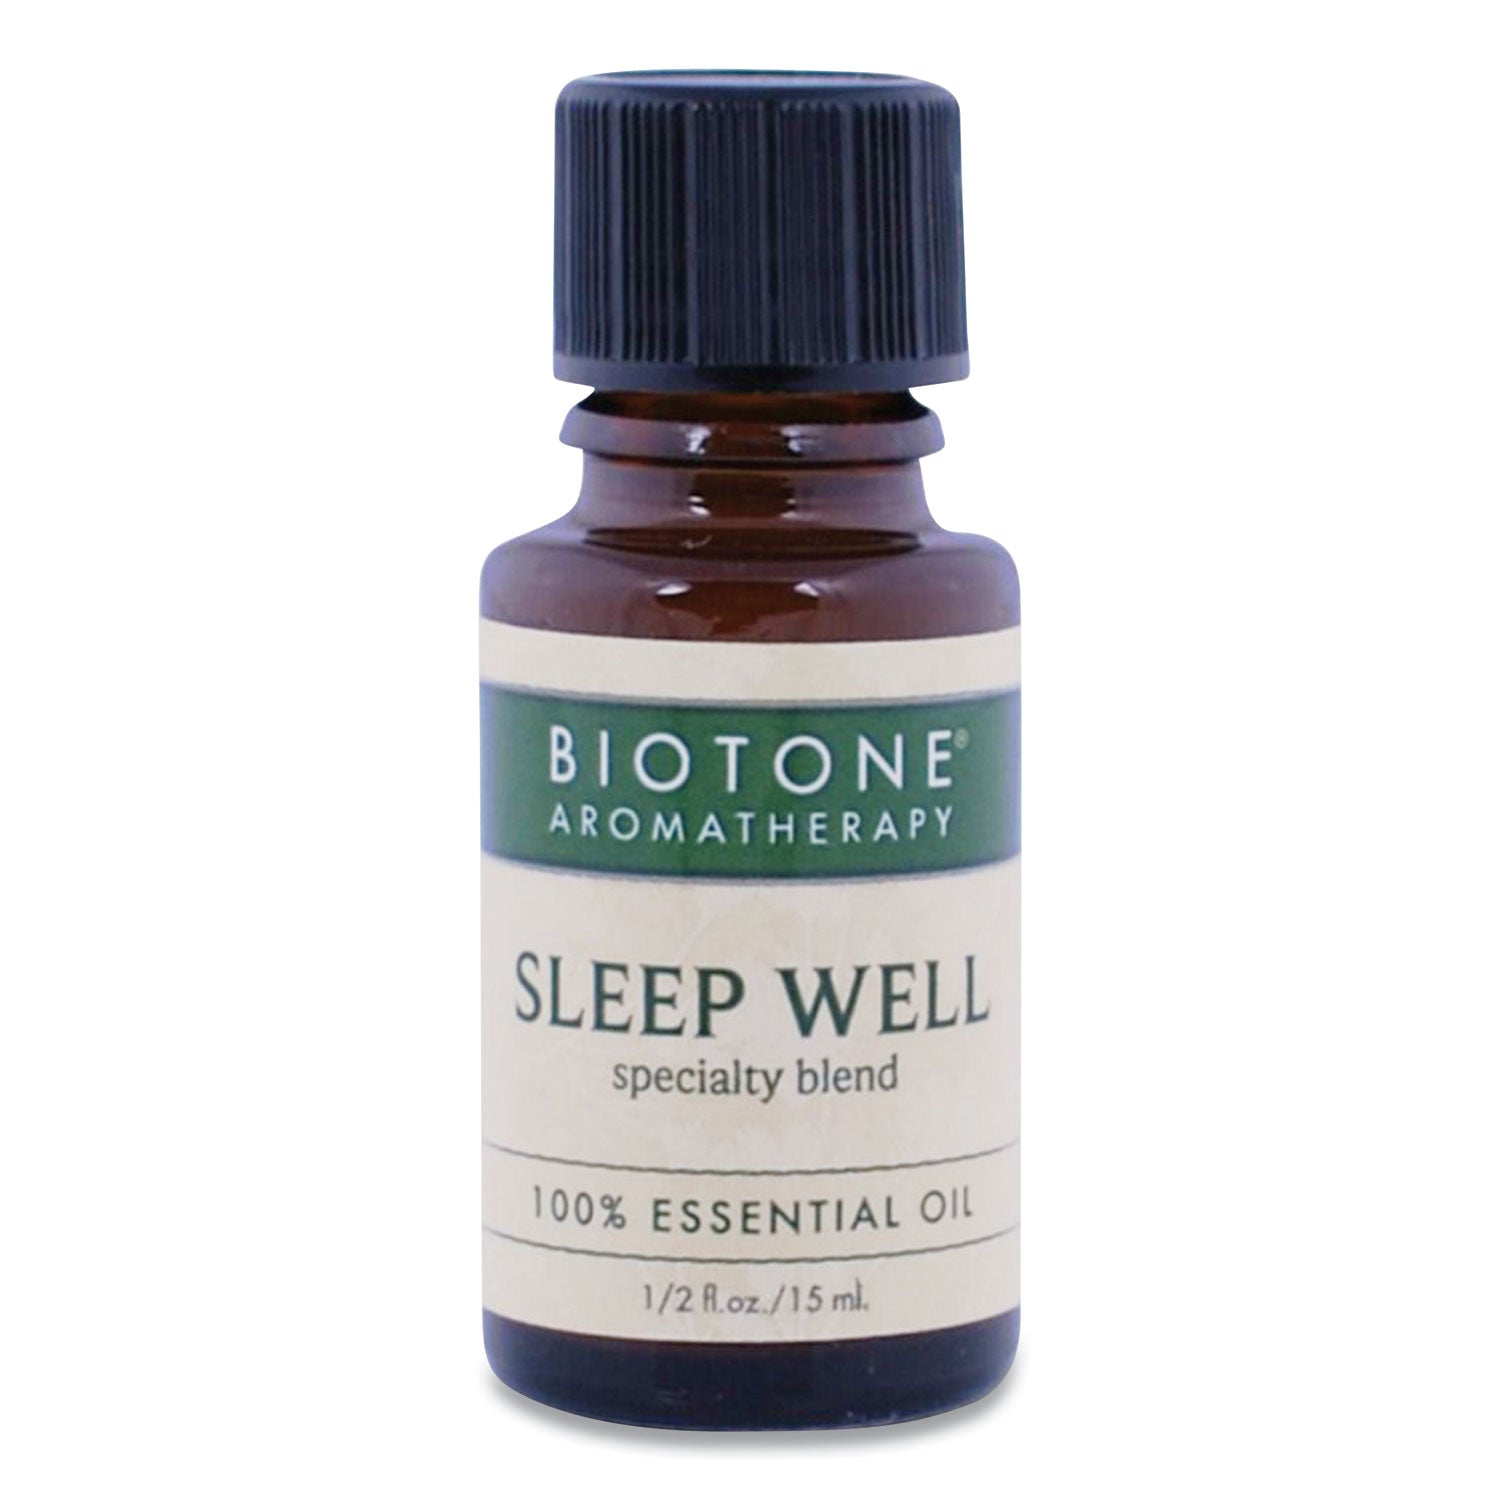 sleep-well-essential-oil-05-oz-bottle-woodsy-scent_btnbaeoslehz - 1